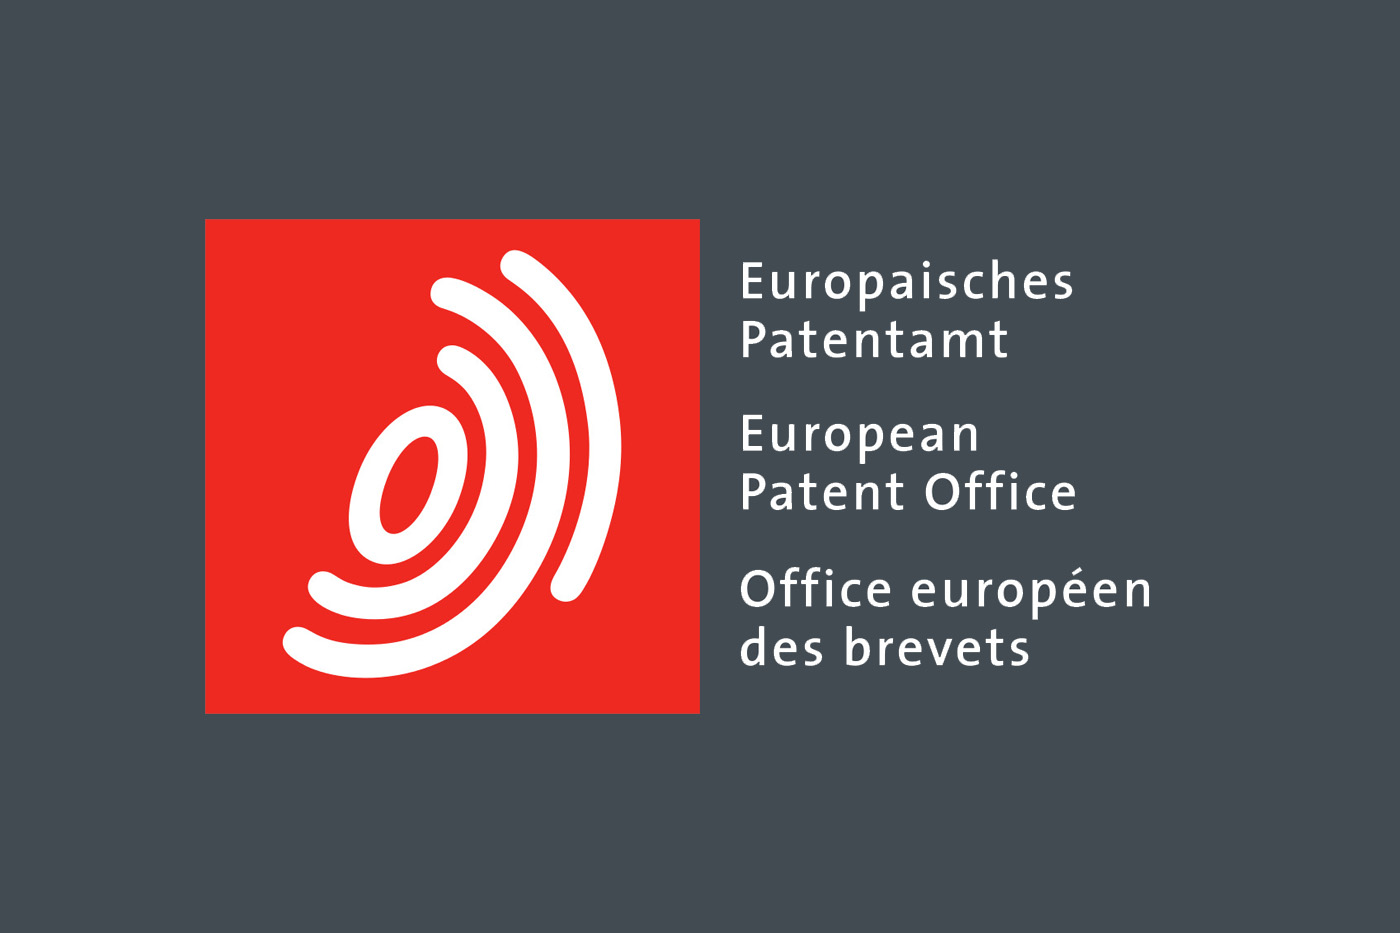 oficina europea de patentes logo